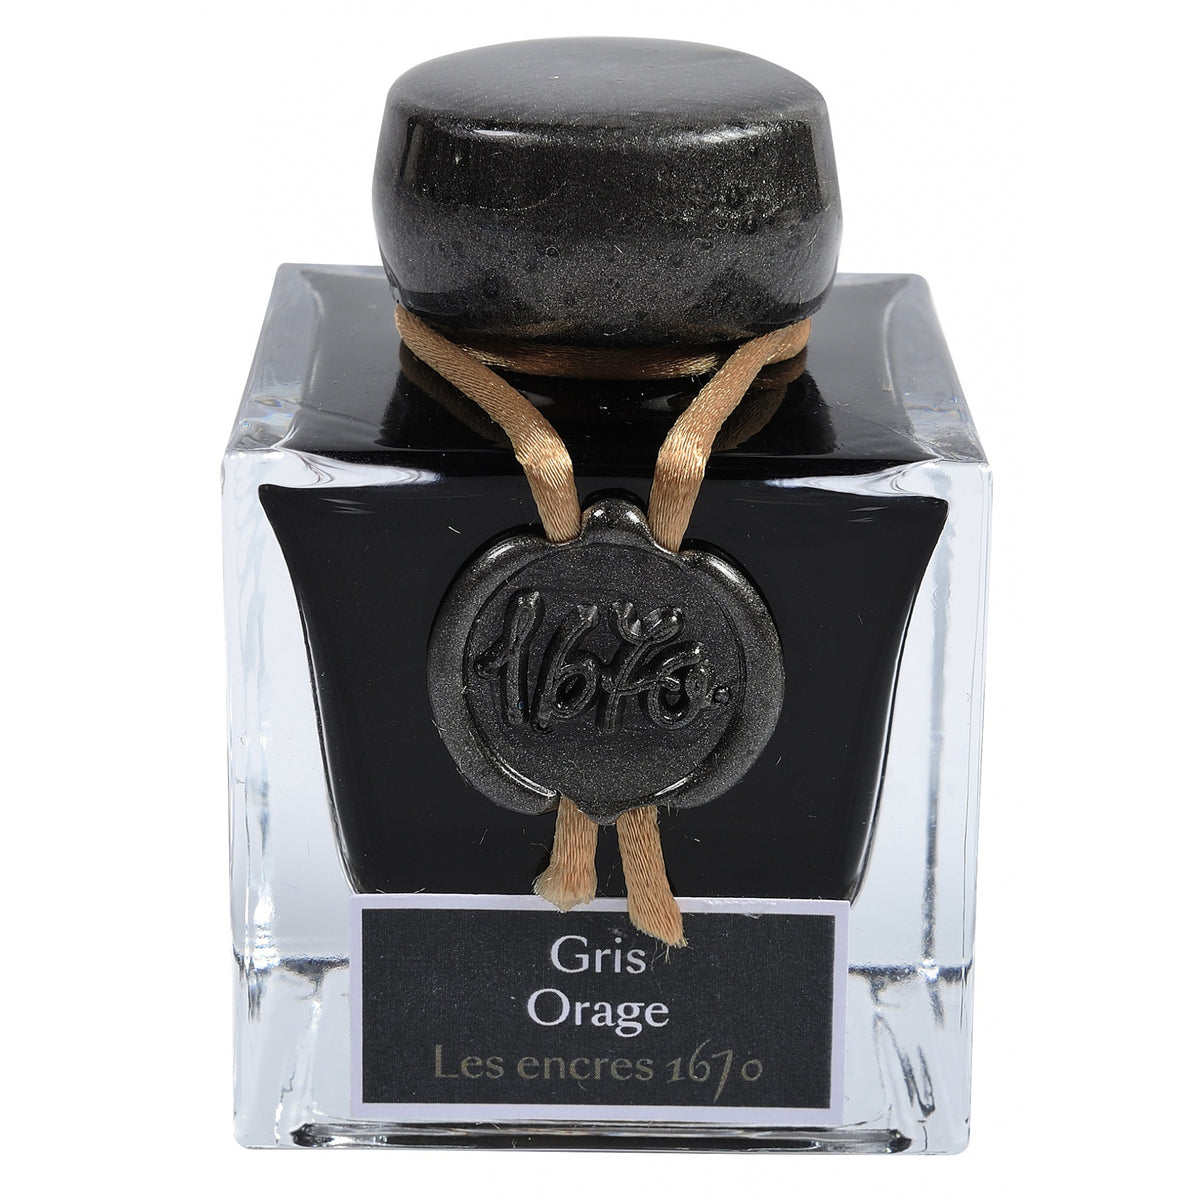 Herbin 1670 Anniversary Ink - Gris Orage (Stormy Grey)